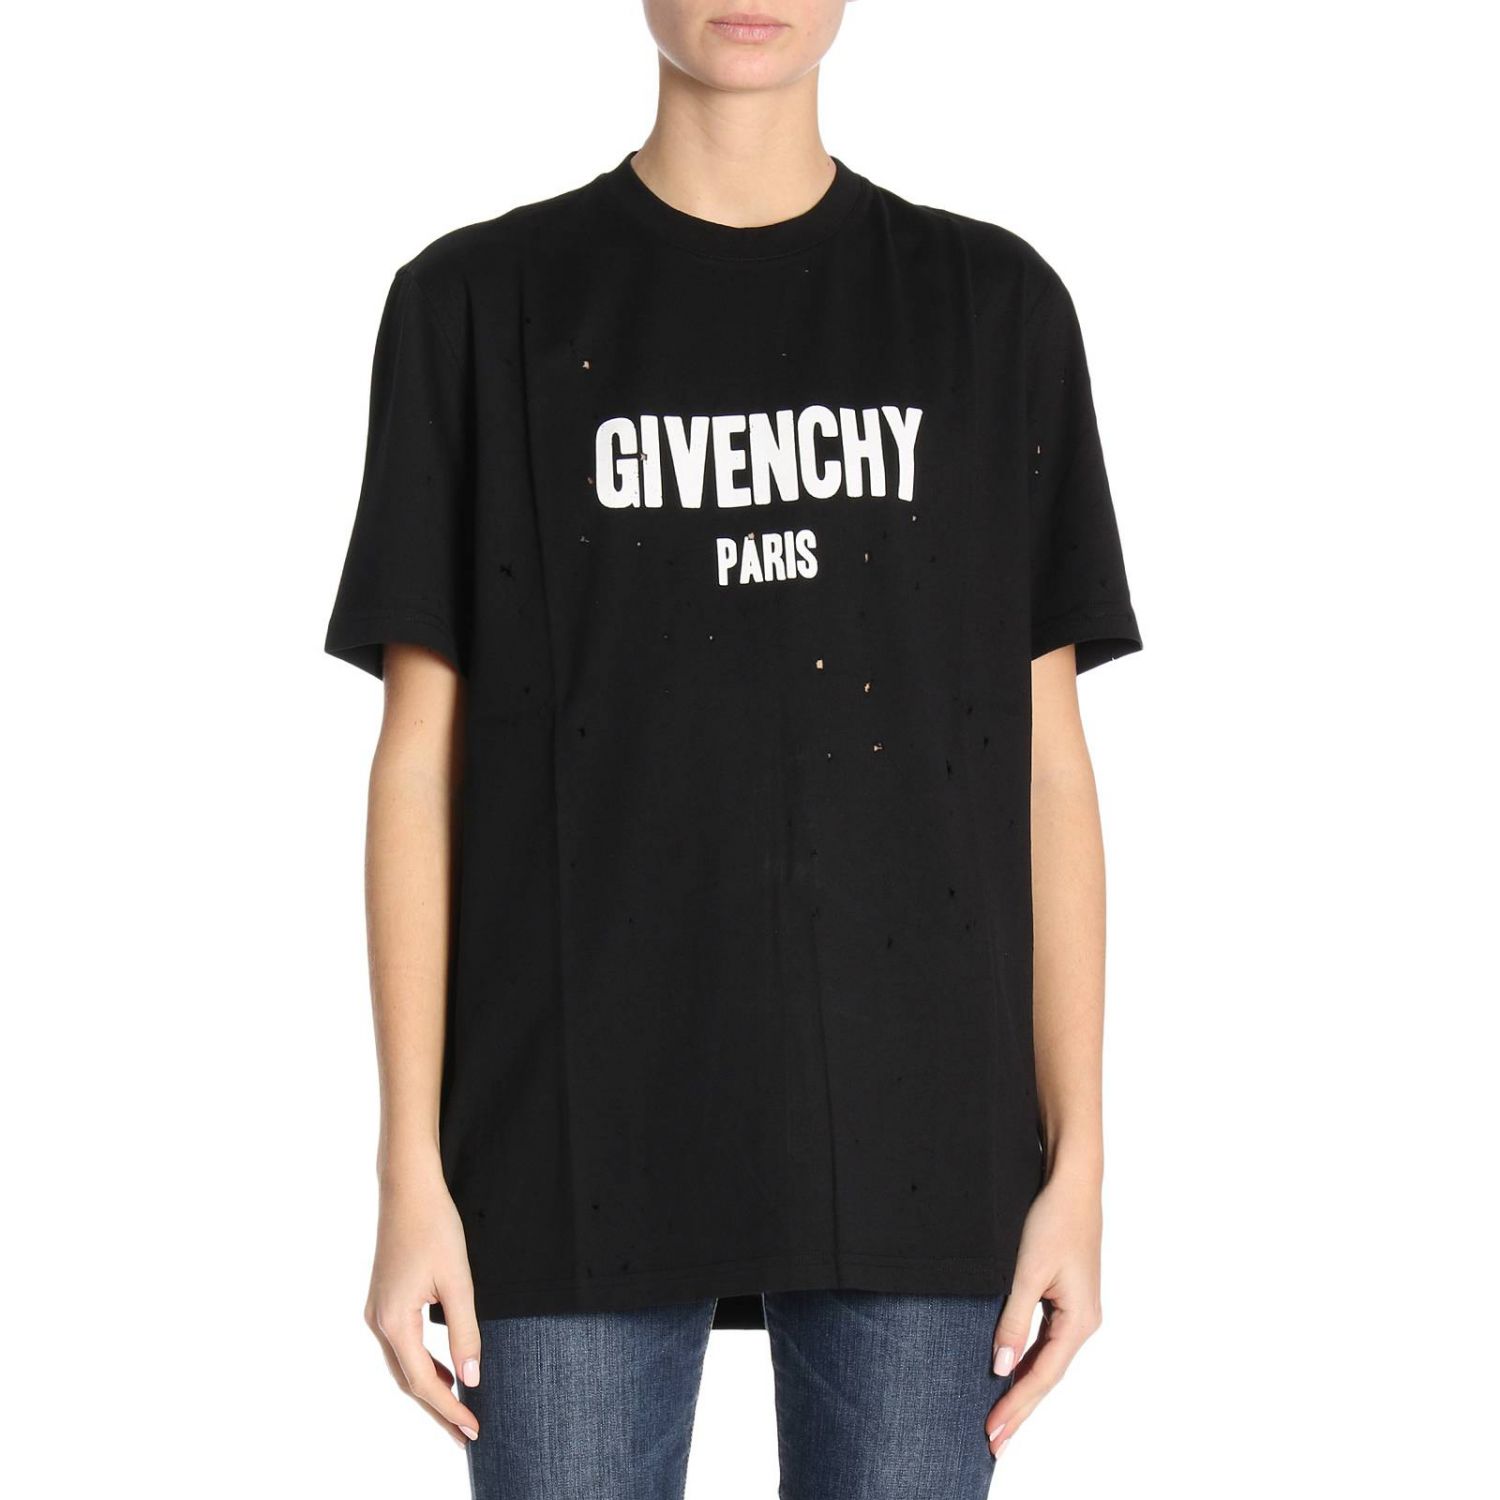 givenchy shirt womens